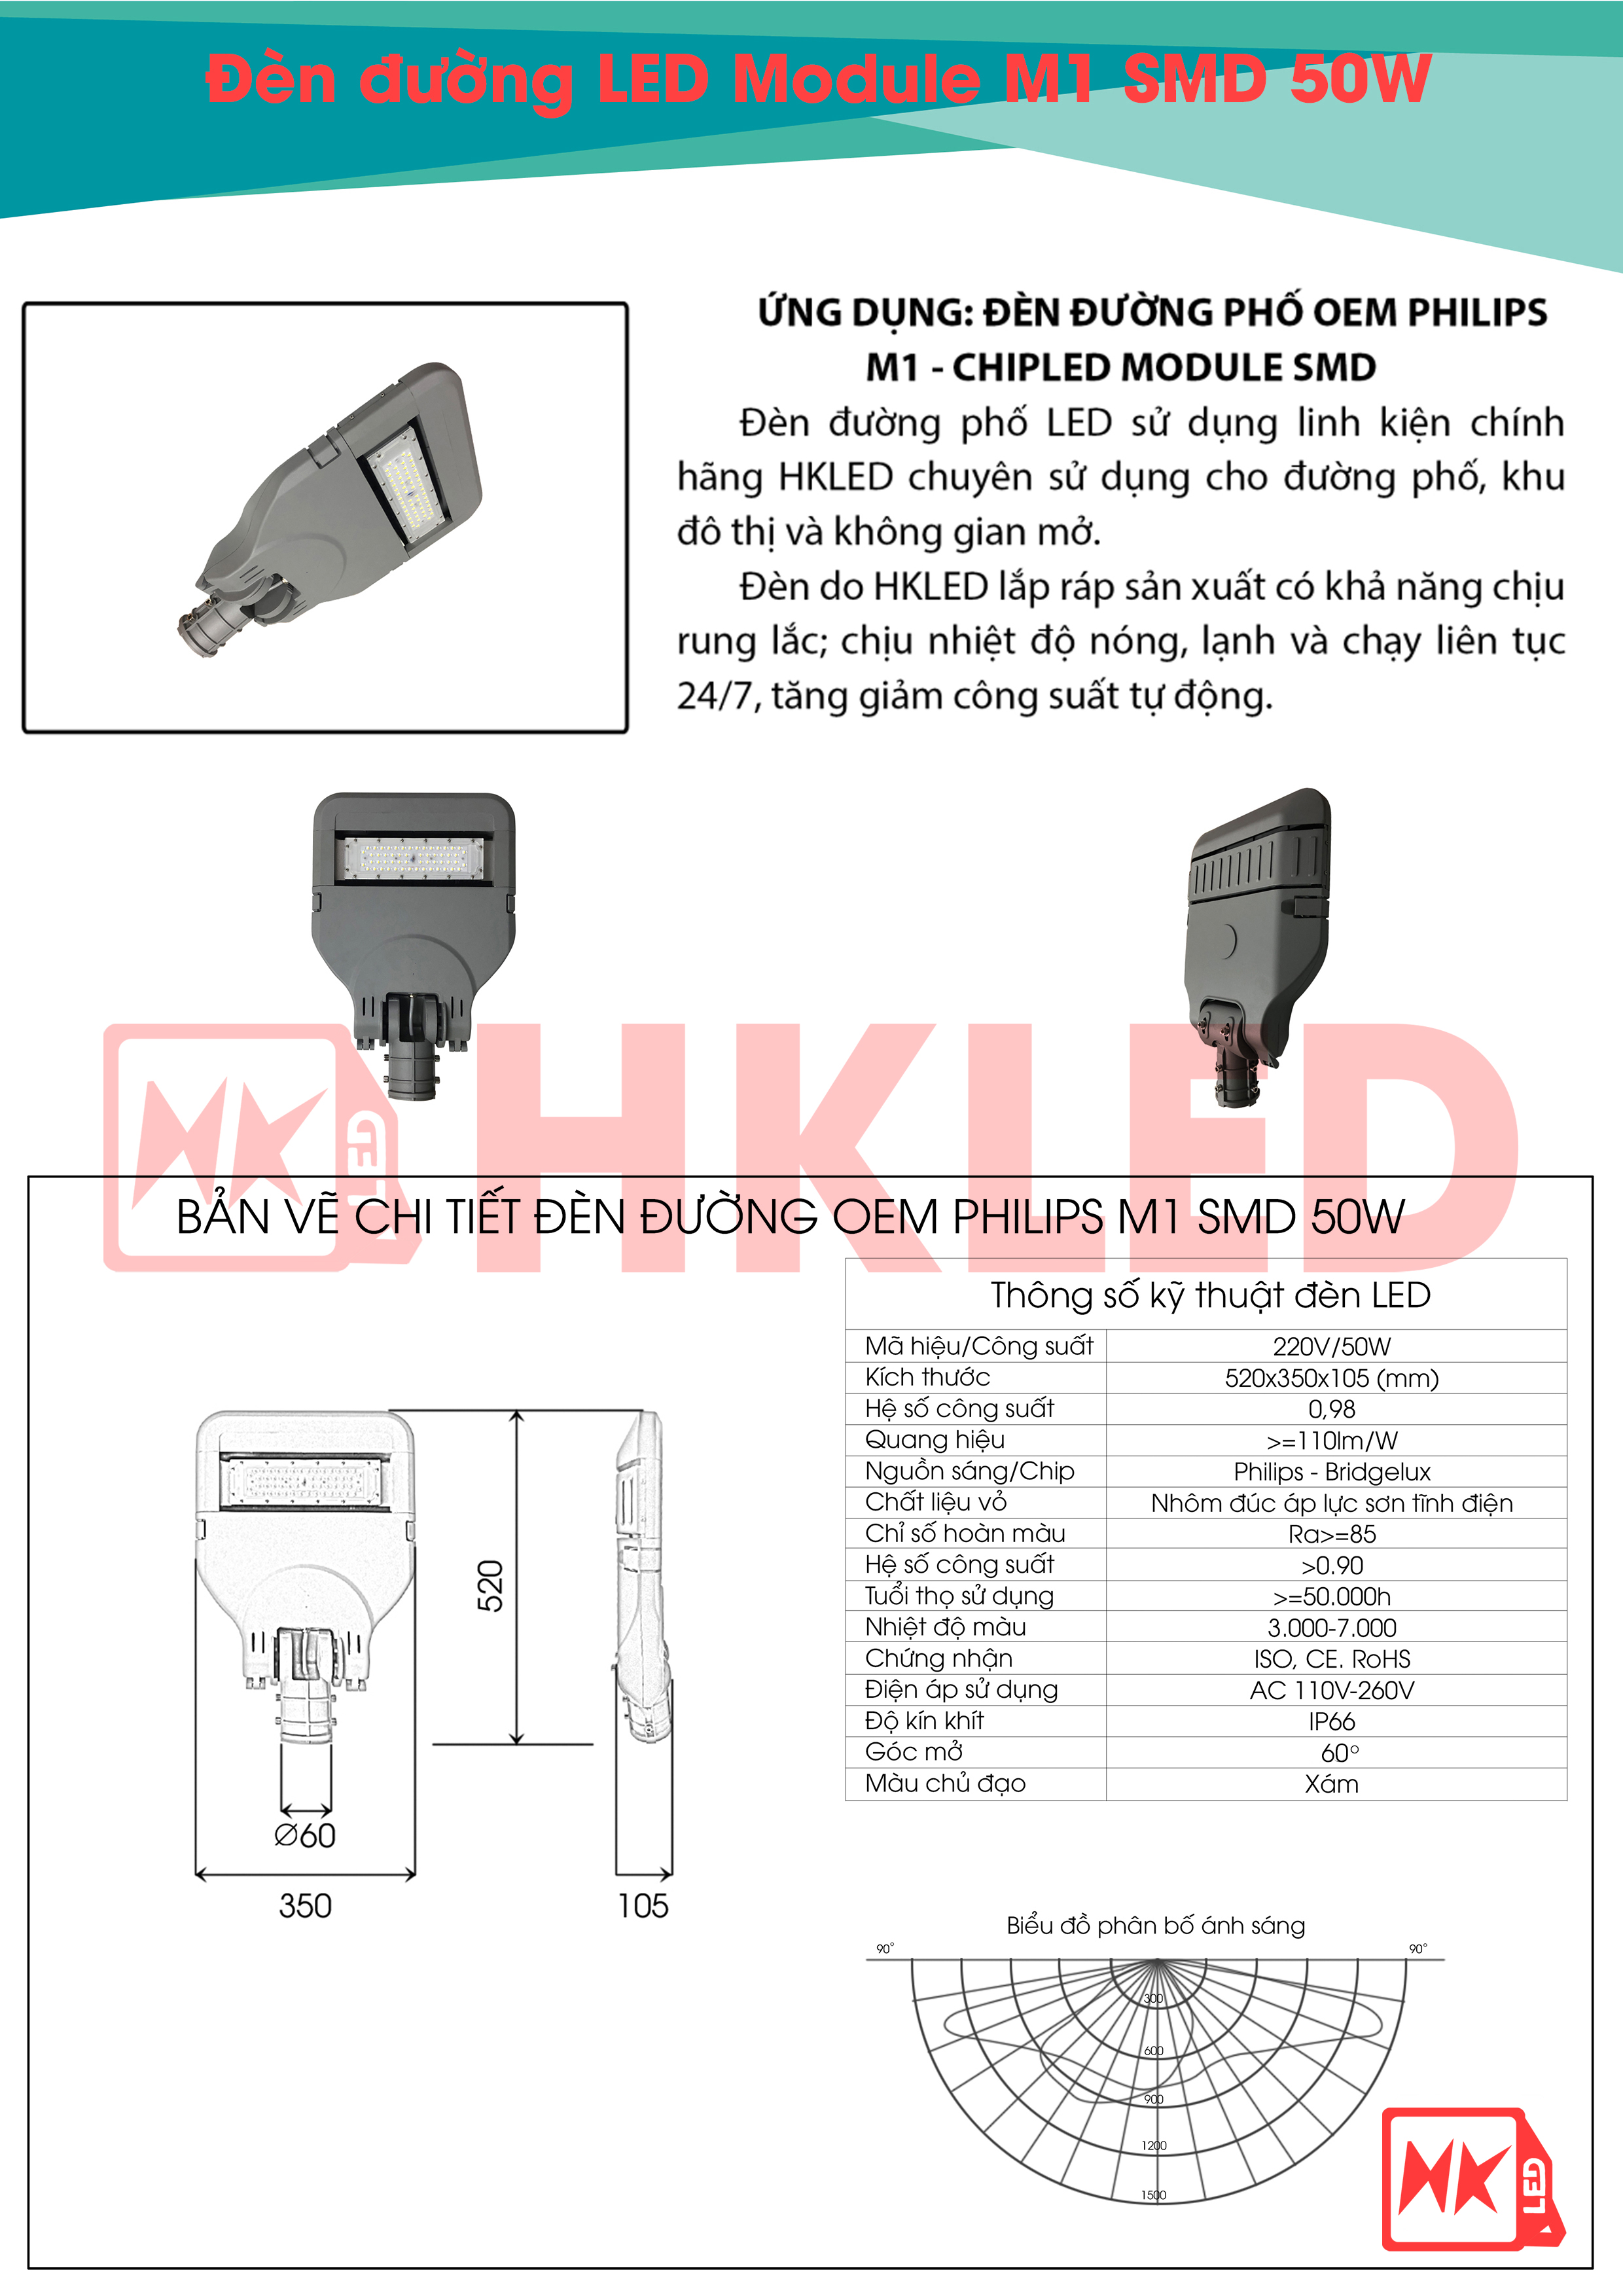 Ứng dụng, bản vẽ chi tiết và thông số kỹ thuật đèn đường LED OEM Philips M1 Module SMD 50W